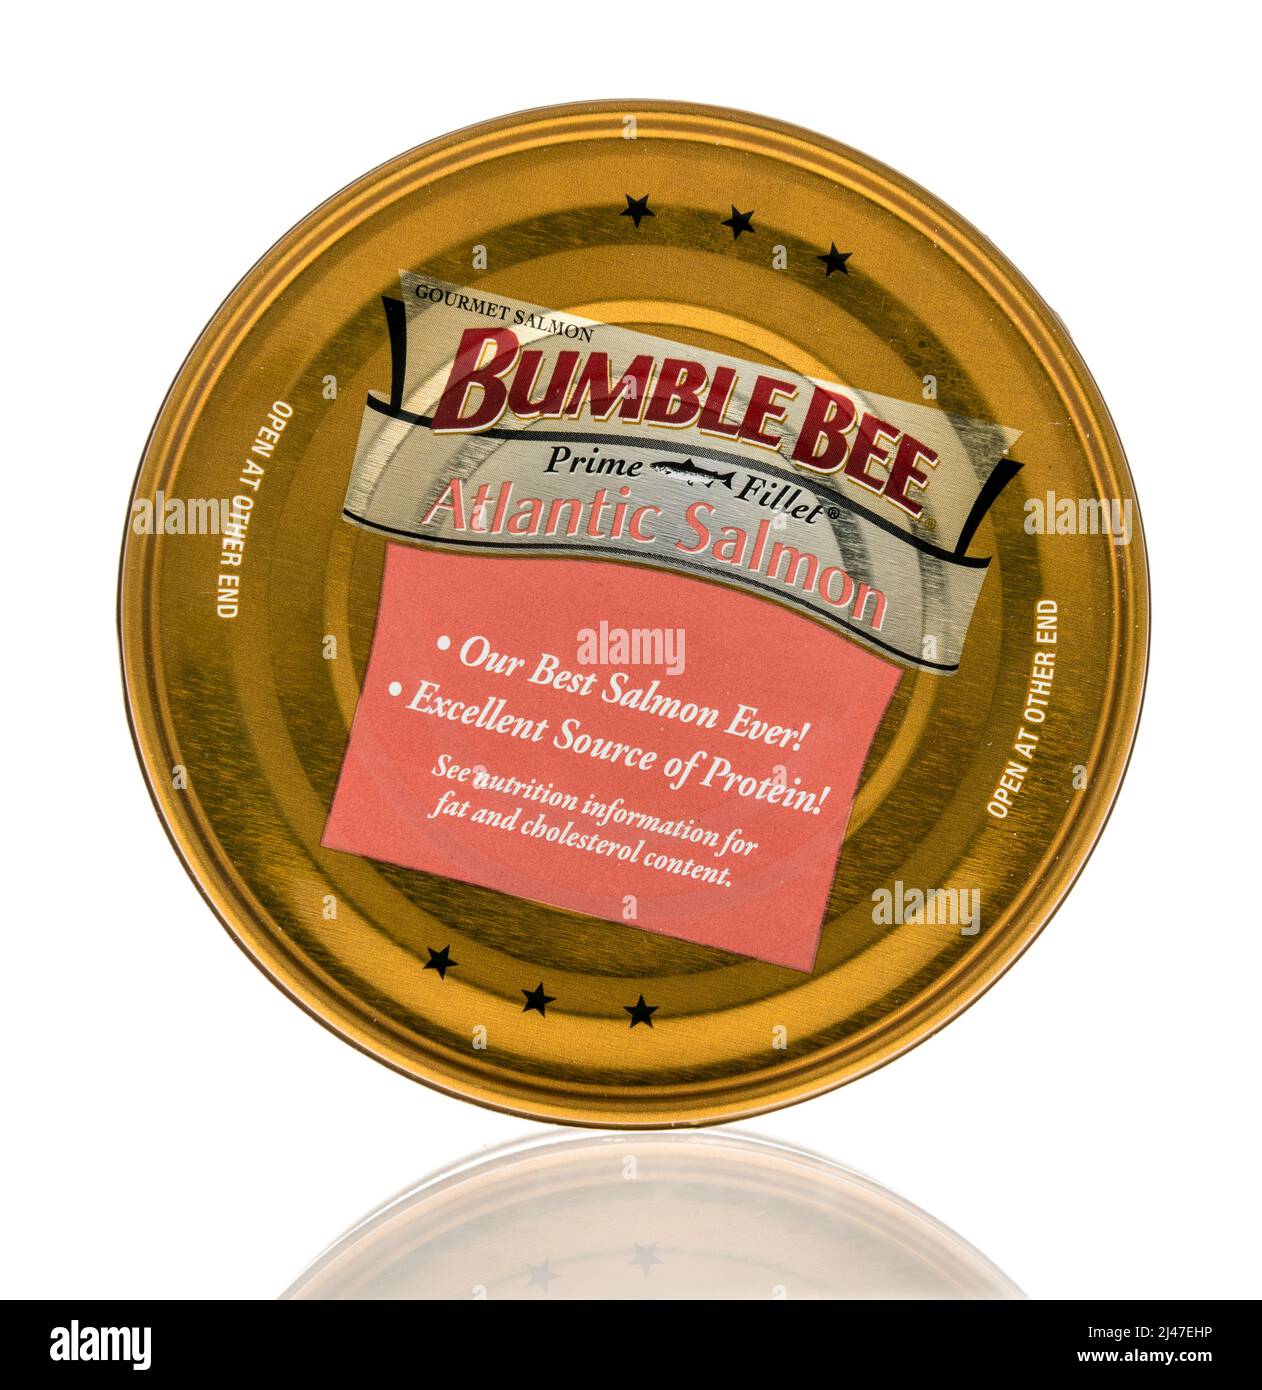 Winneconne, WI -10 avril 2022: Une CAN de Bumble Bite de saumon de l'atlantique sur fond isolé Banque D'Images